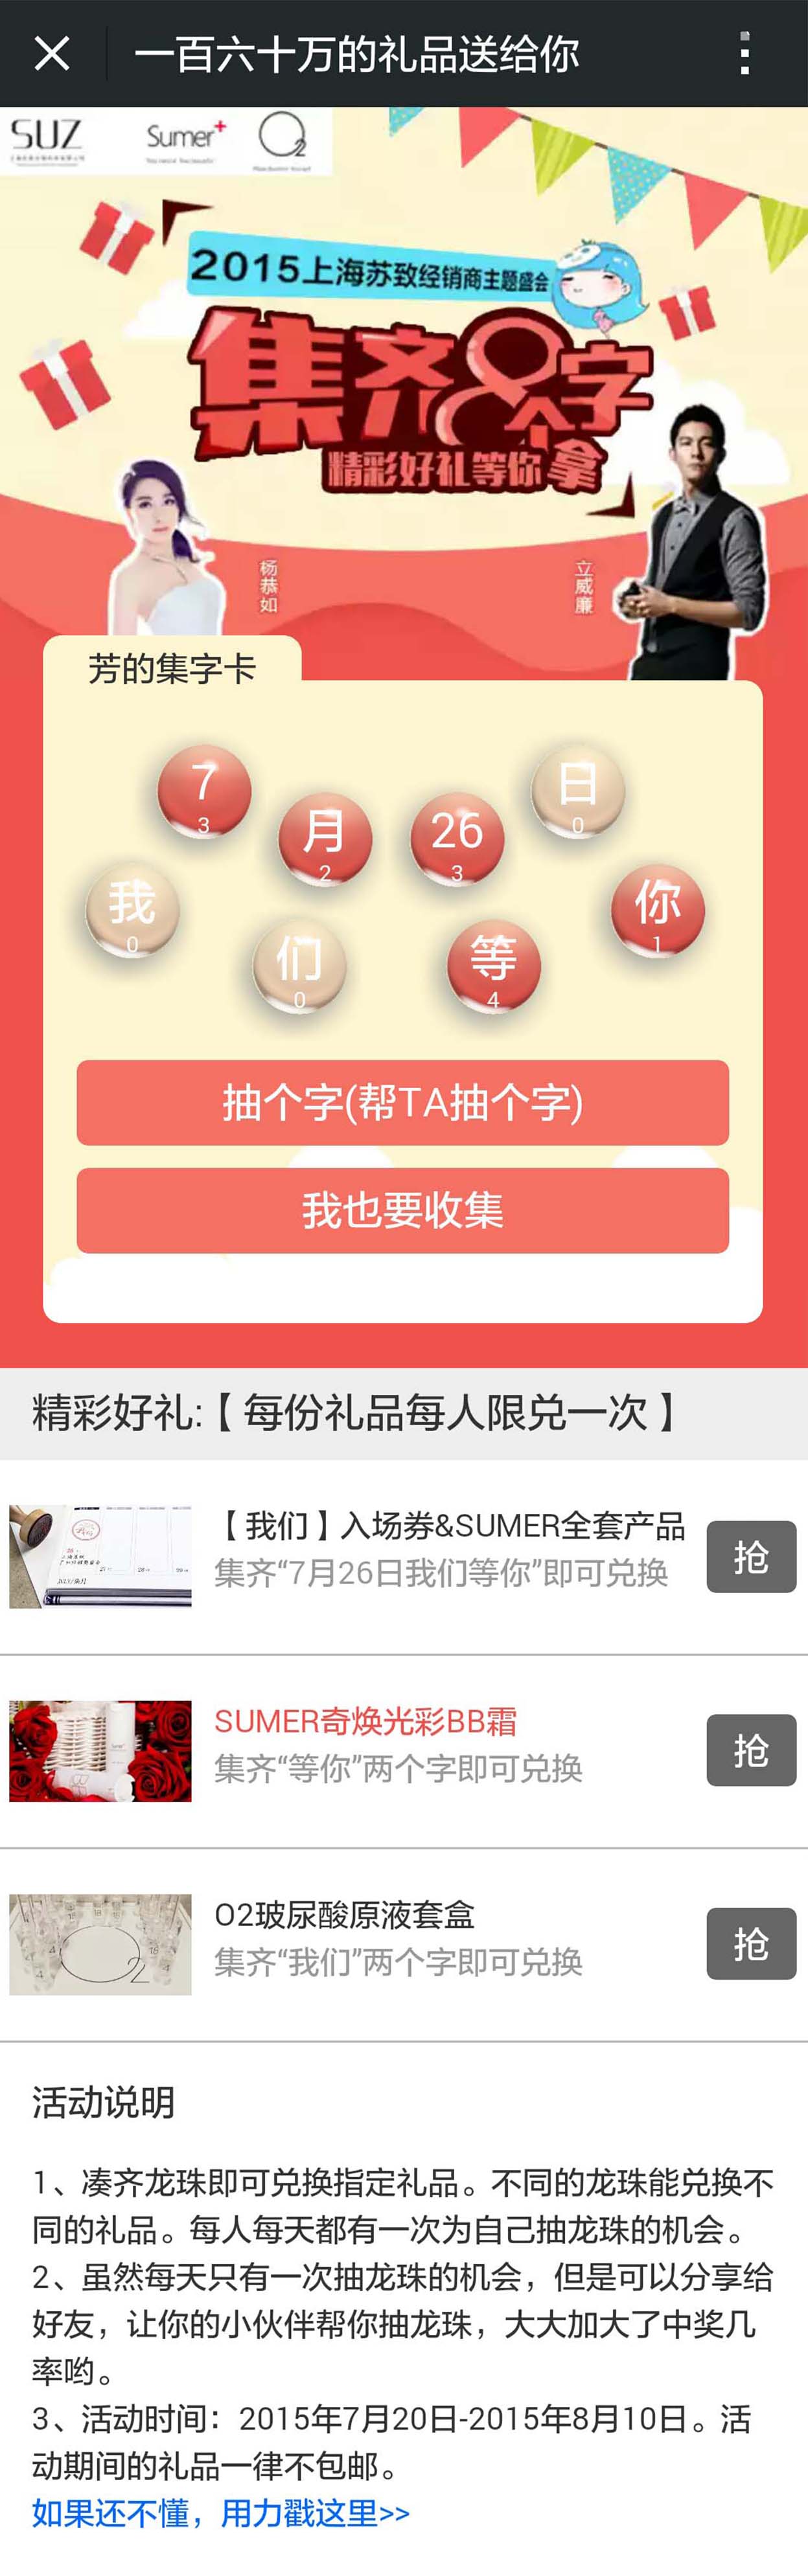 上海苏致集字游戏微加响应式网站案例